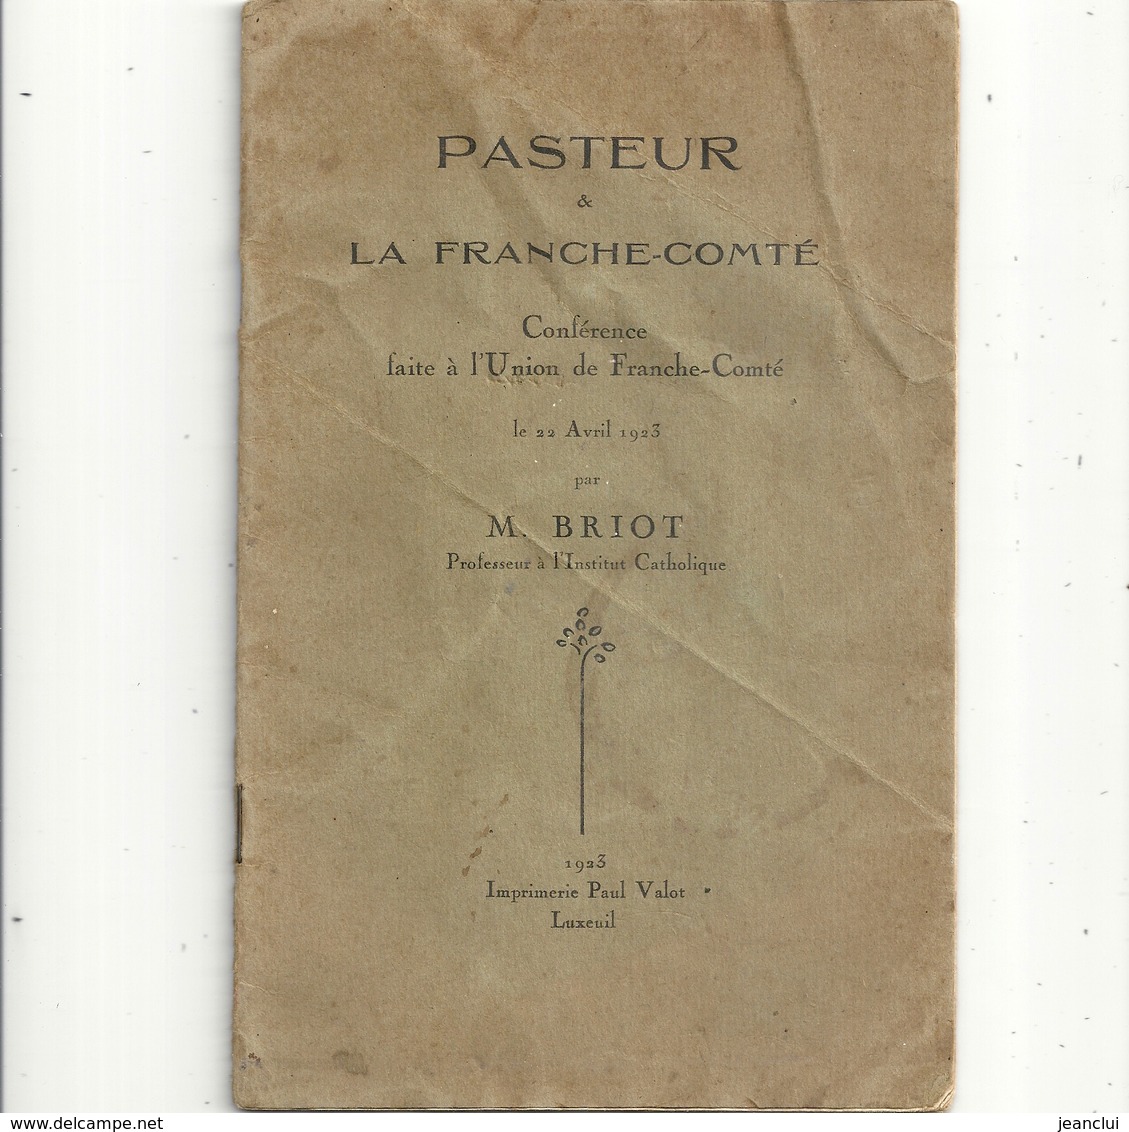 PASTEUR & LA FRANCHE-COMTEconference Faite A L'UNION DE FRANCHE-COMTE Par M. BRIOT 22 AVRIL 1923 - Geschichte